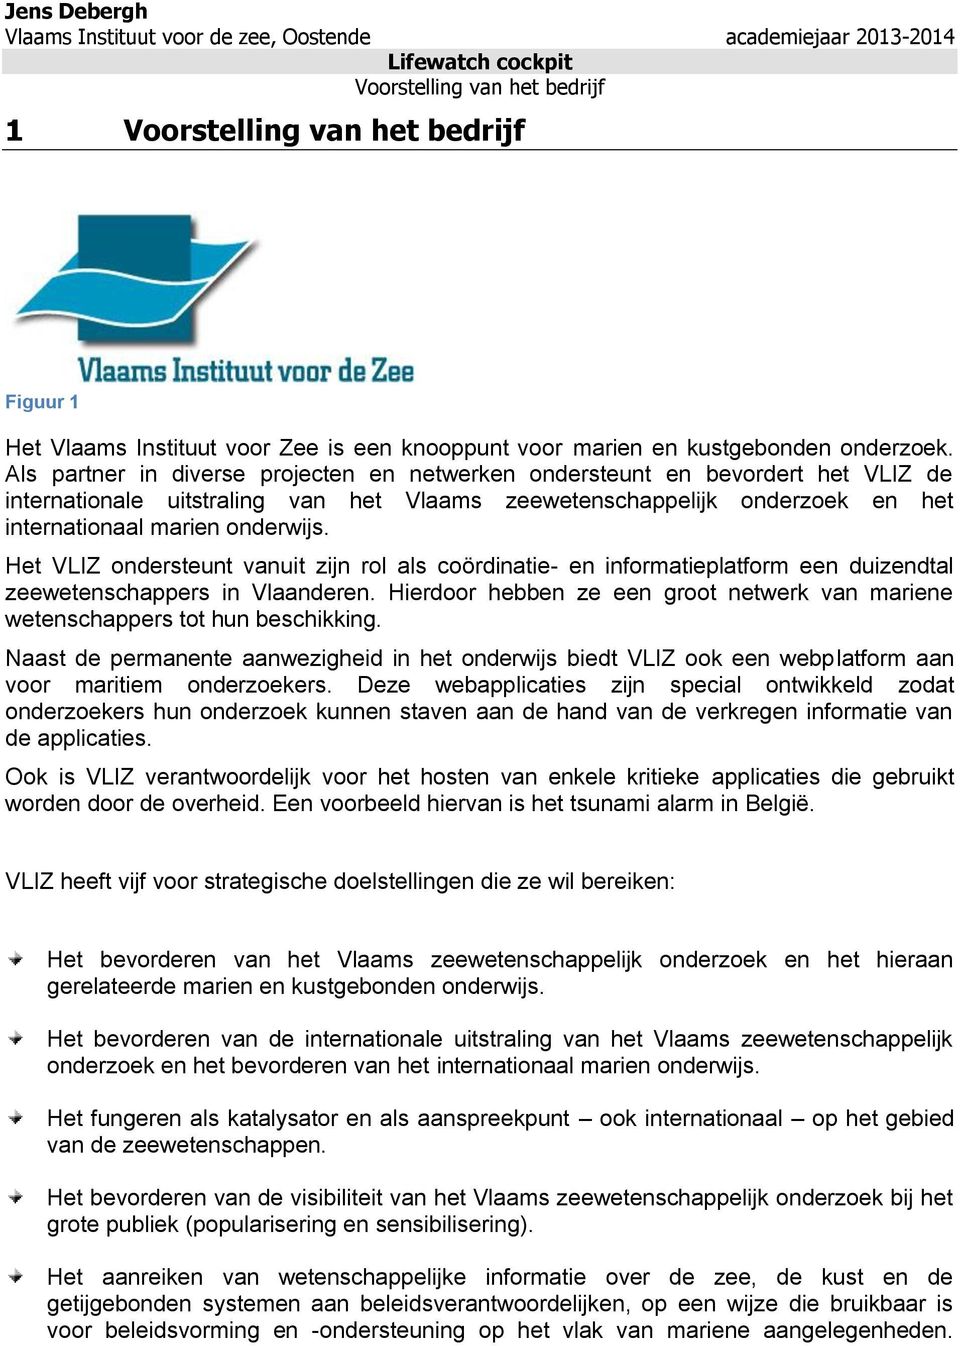 Het VLIZ ondersteunt vanuit zijn rol als coördinatie- en informatieplatform een duizendtal zeewetenschappers in Vlaanderen.